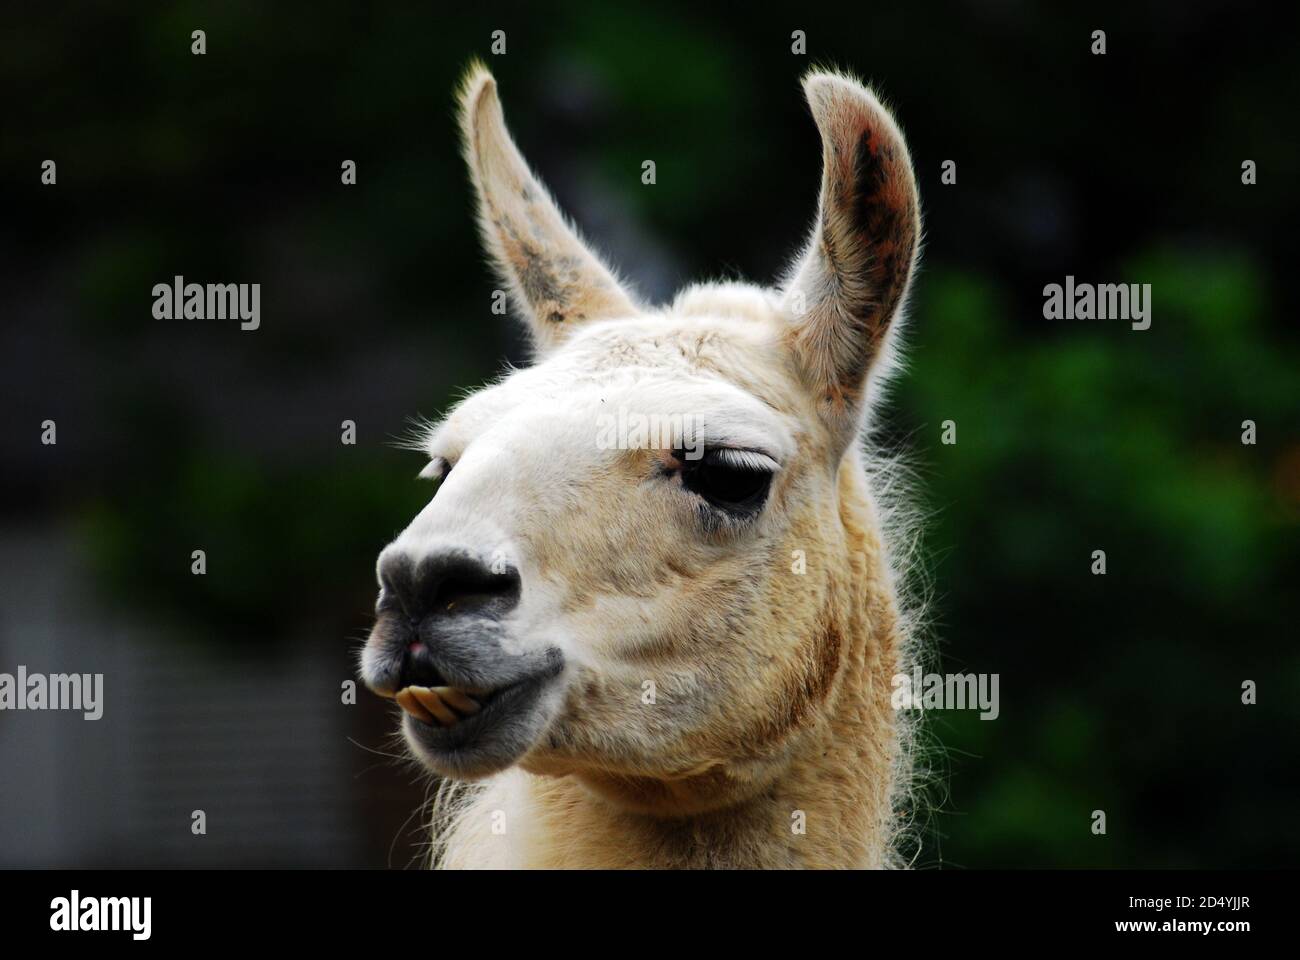 Lama bianca (lama glama), testa ravvicinata, orecchie, muso e occhi domesticated camelide sudamericano ampiamente utilizzato come un animale da imballaggio & per la sua lana e carne Foto Stock